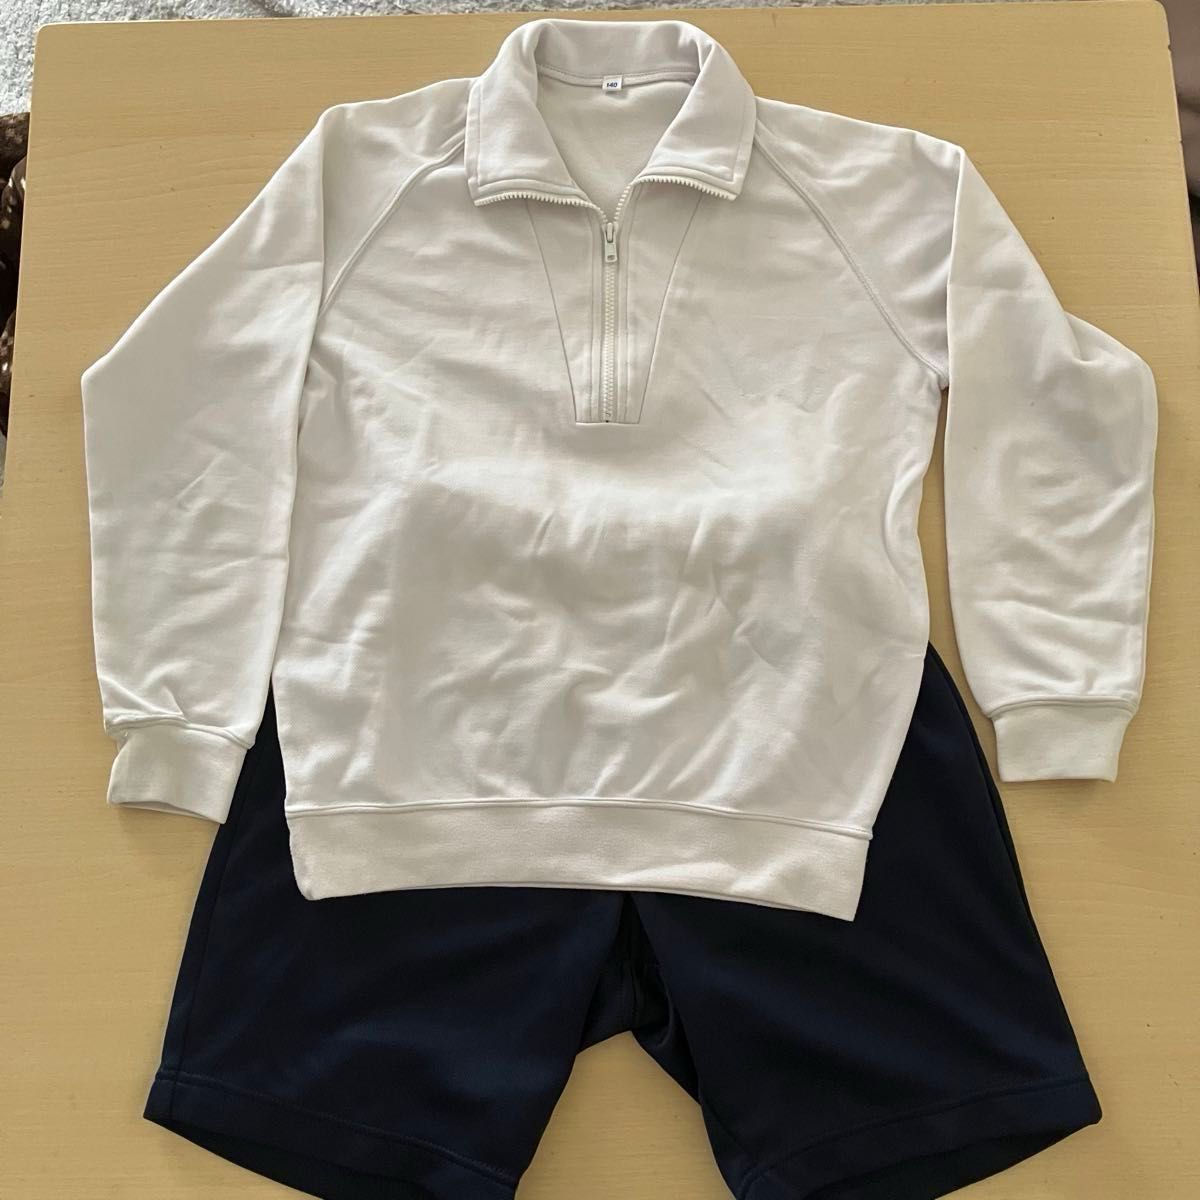 白長袖トレーニングシャツと紺トレーニングハーフパンツのセット 140cm 体操服　体操着